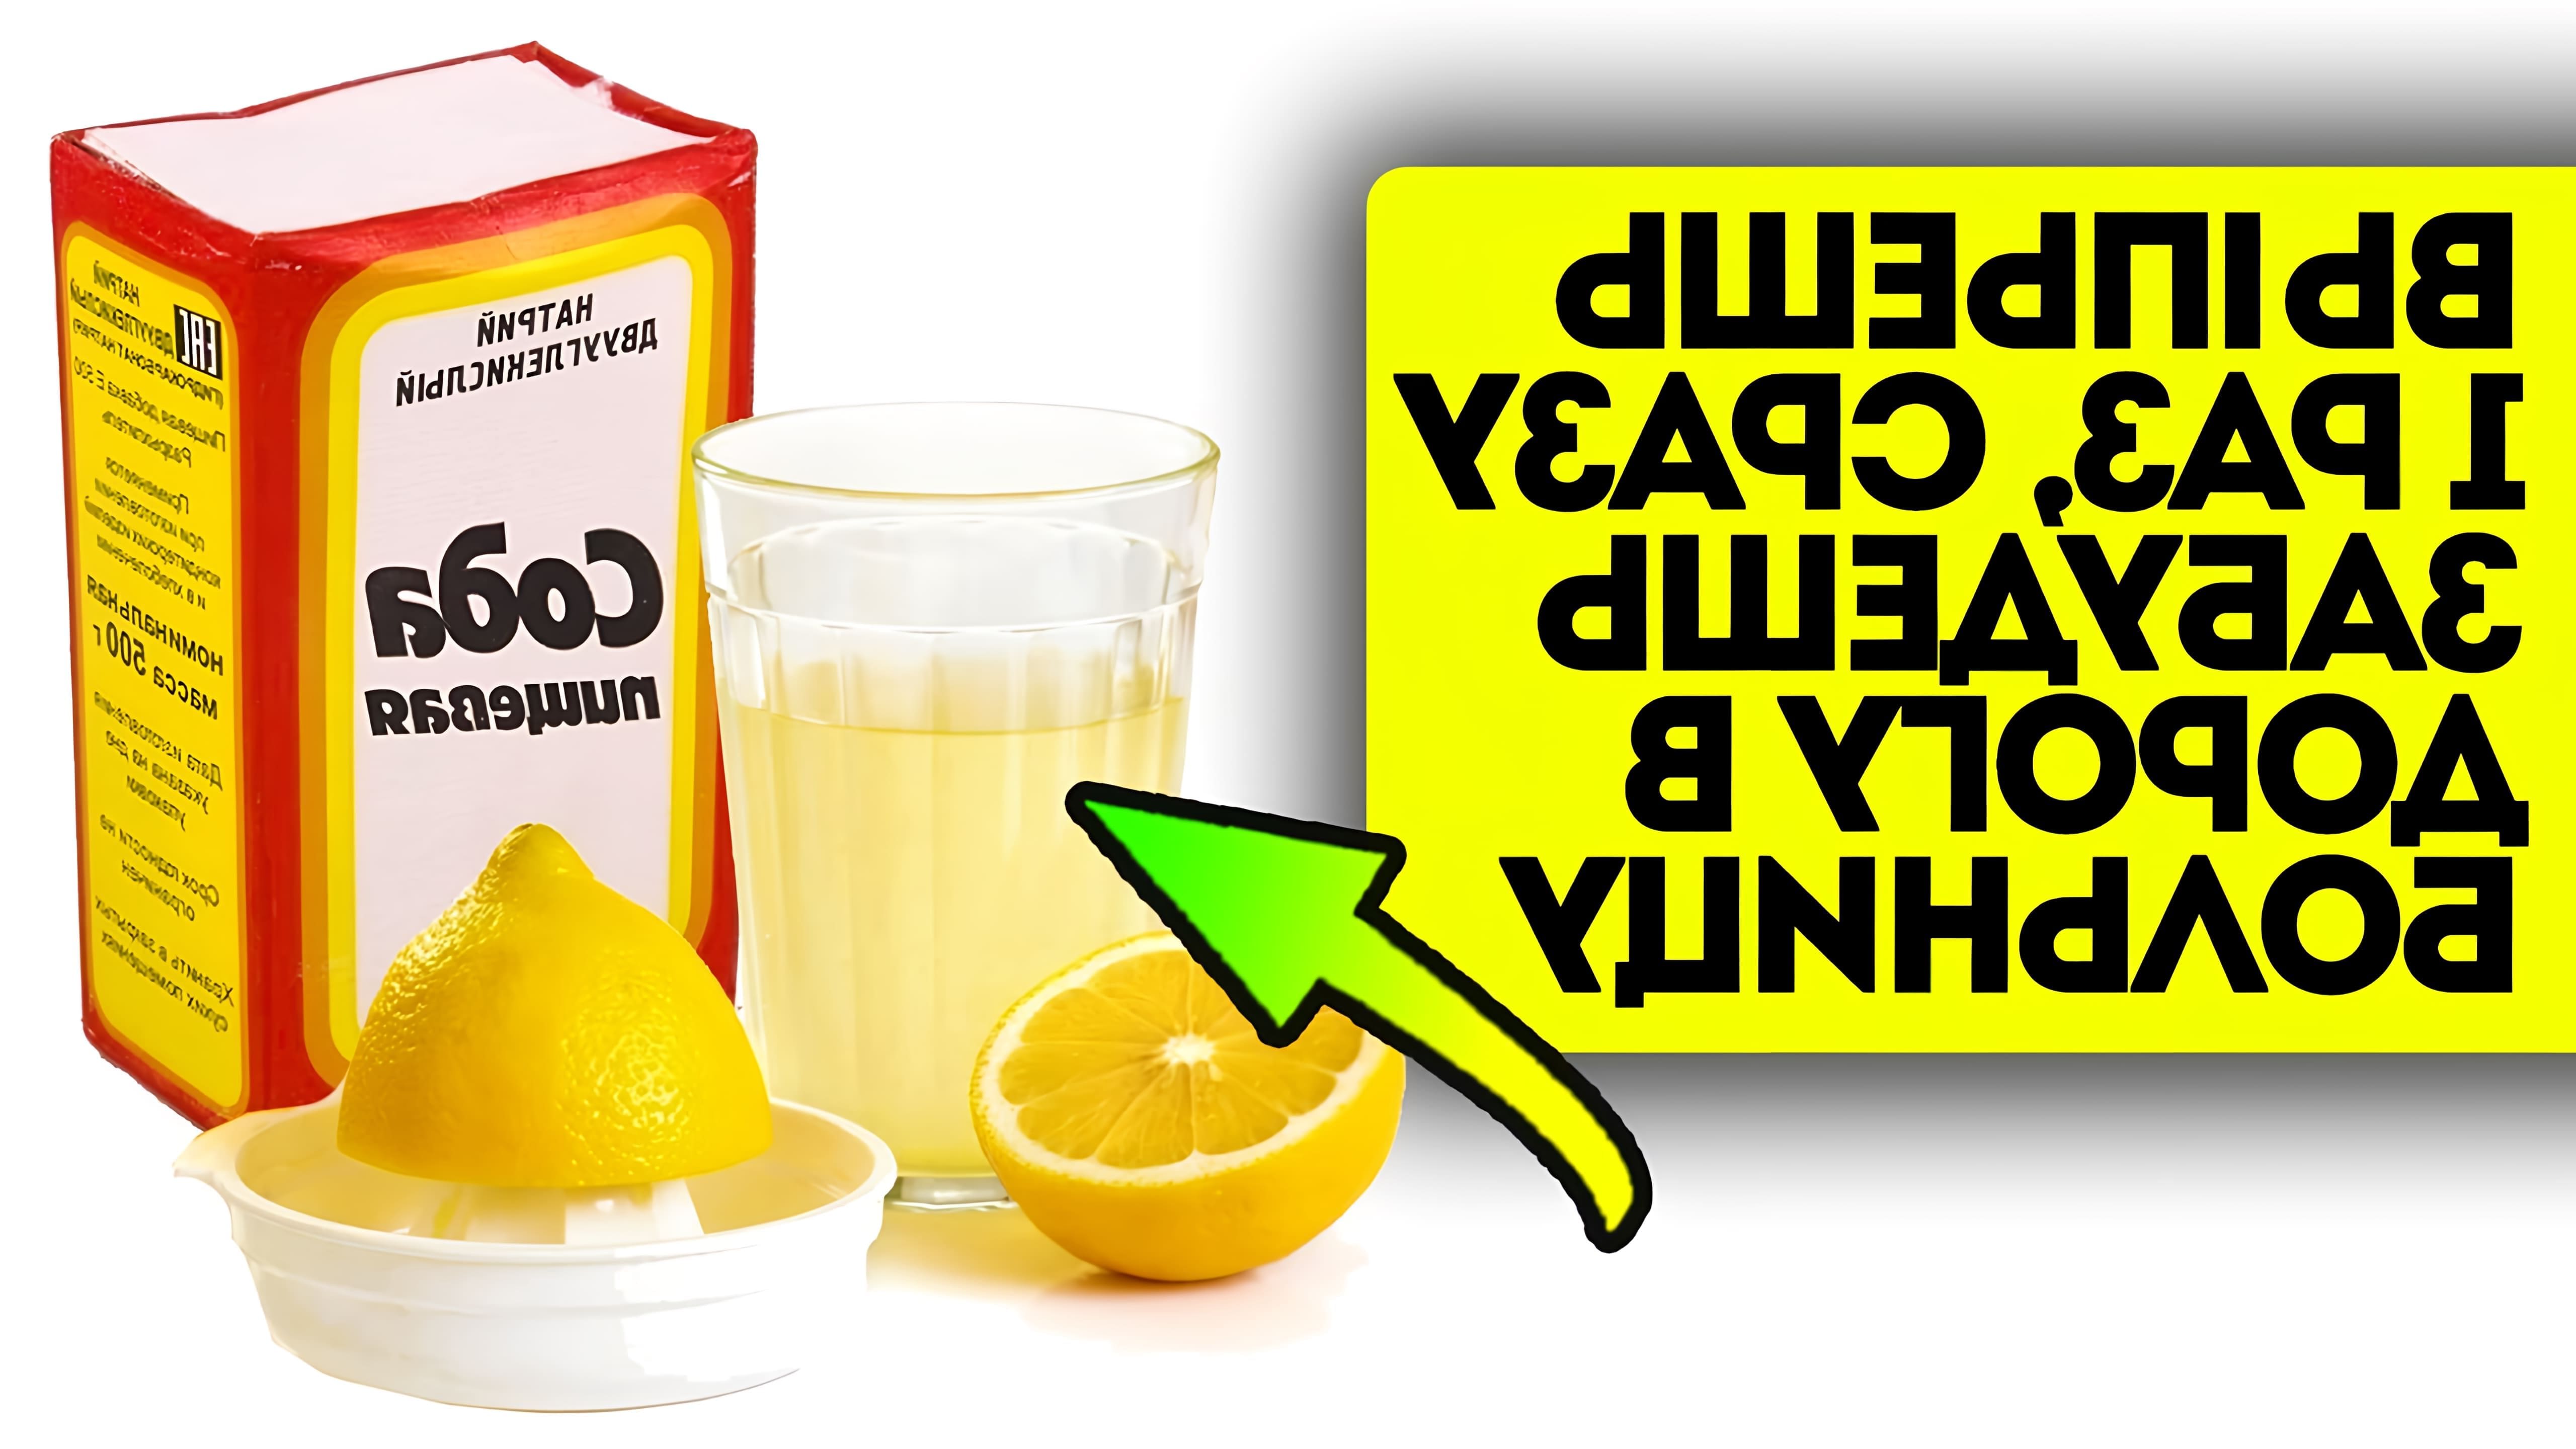 00:00 Какими свойствами обладает смесь раствора соды и лимонного сока? Что происходит в организме при... 